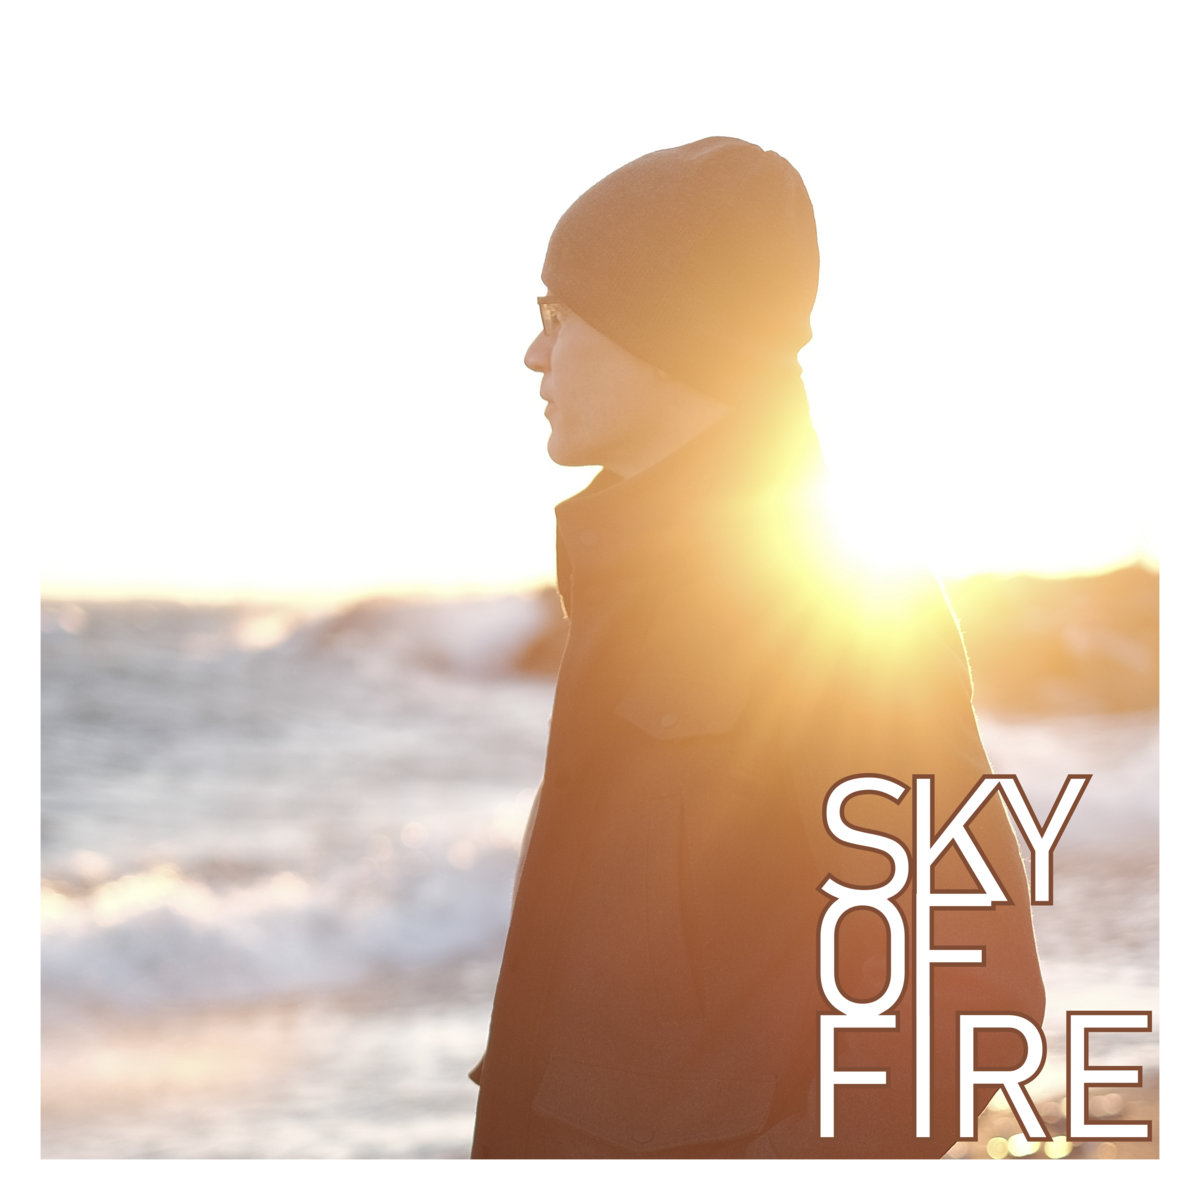 Sky of Fire ‘Sky of Fire’ album artwork